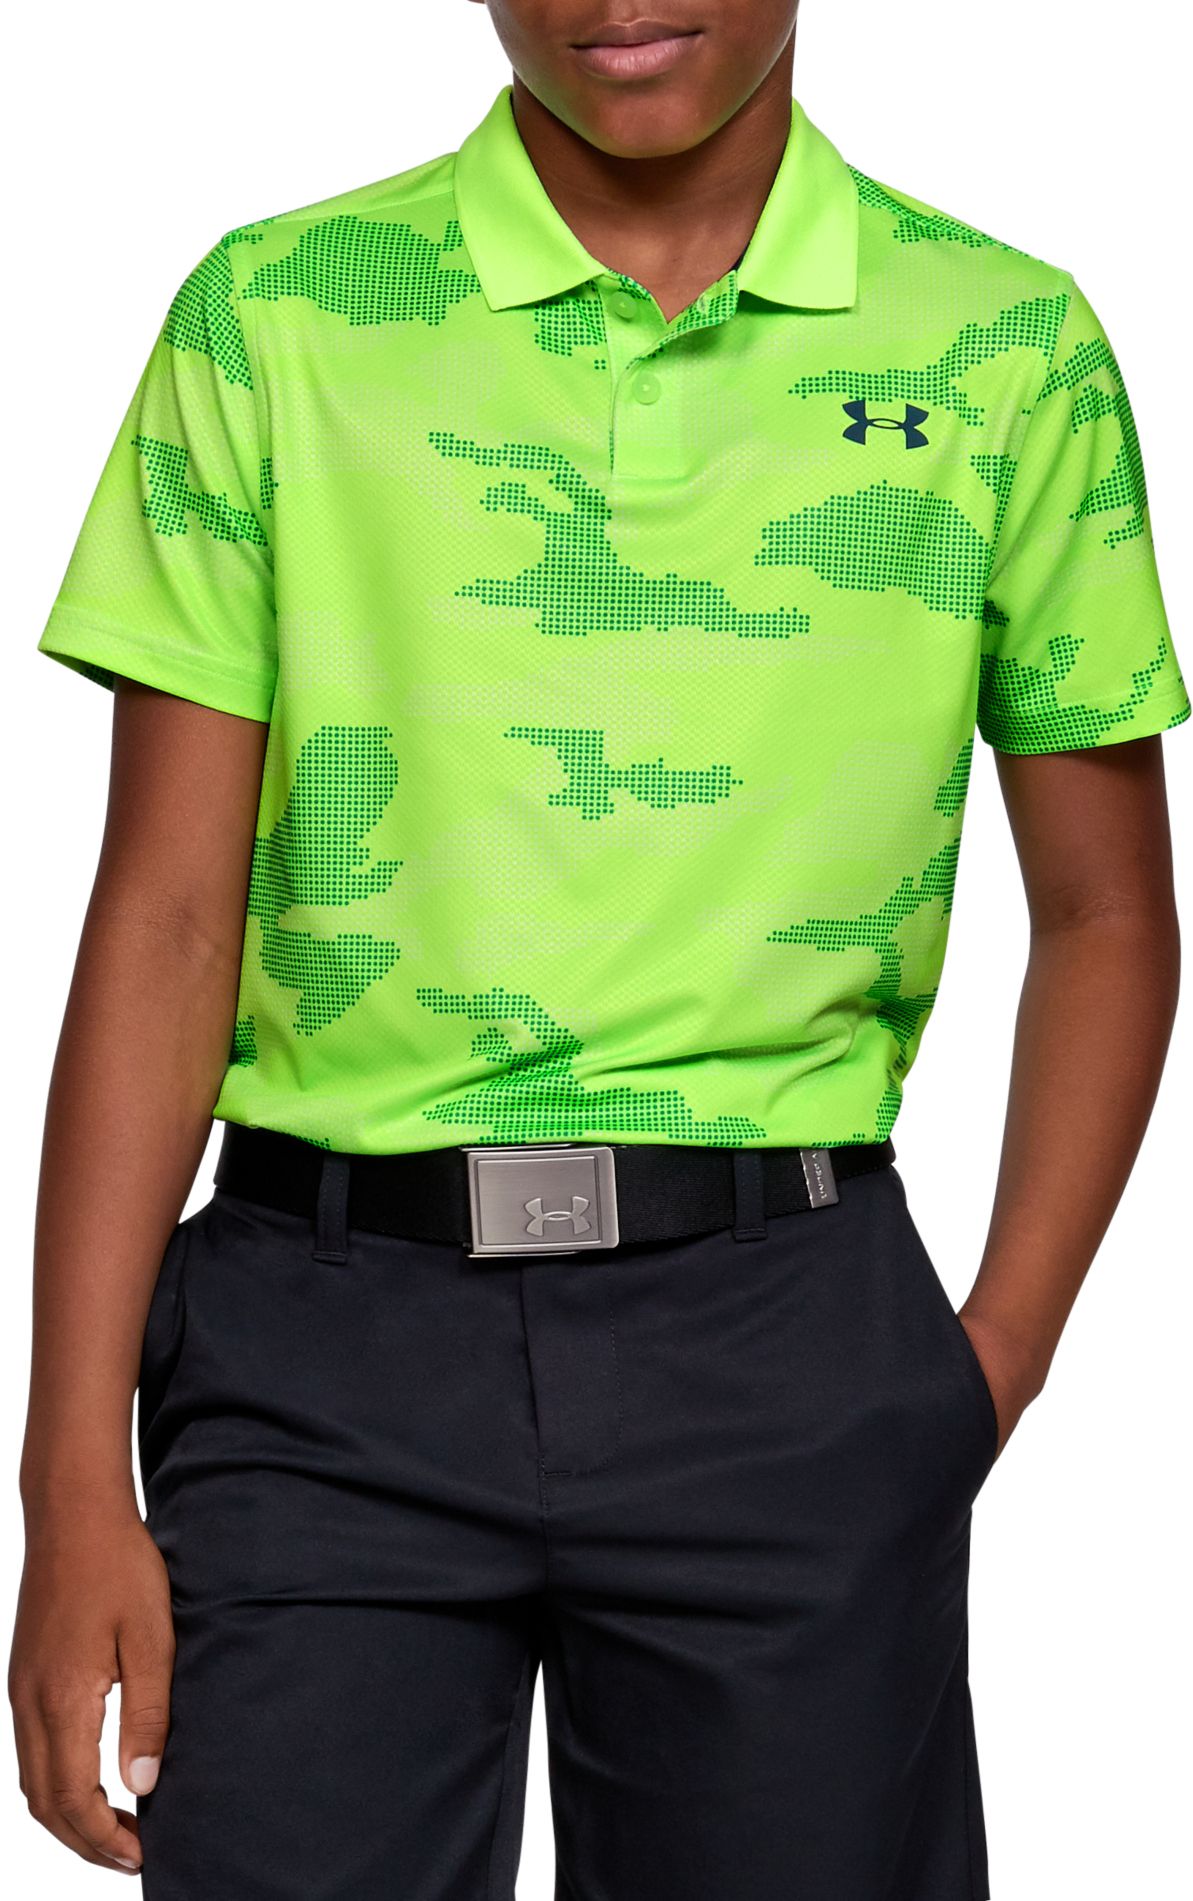 armour golf shirts